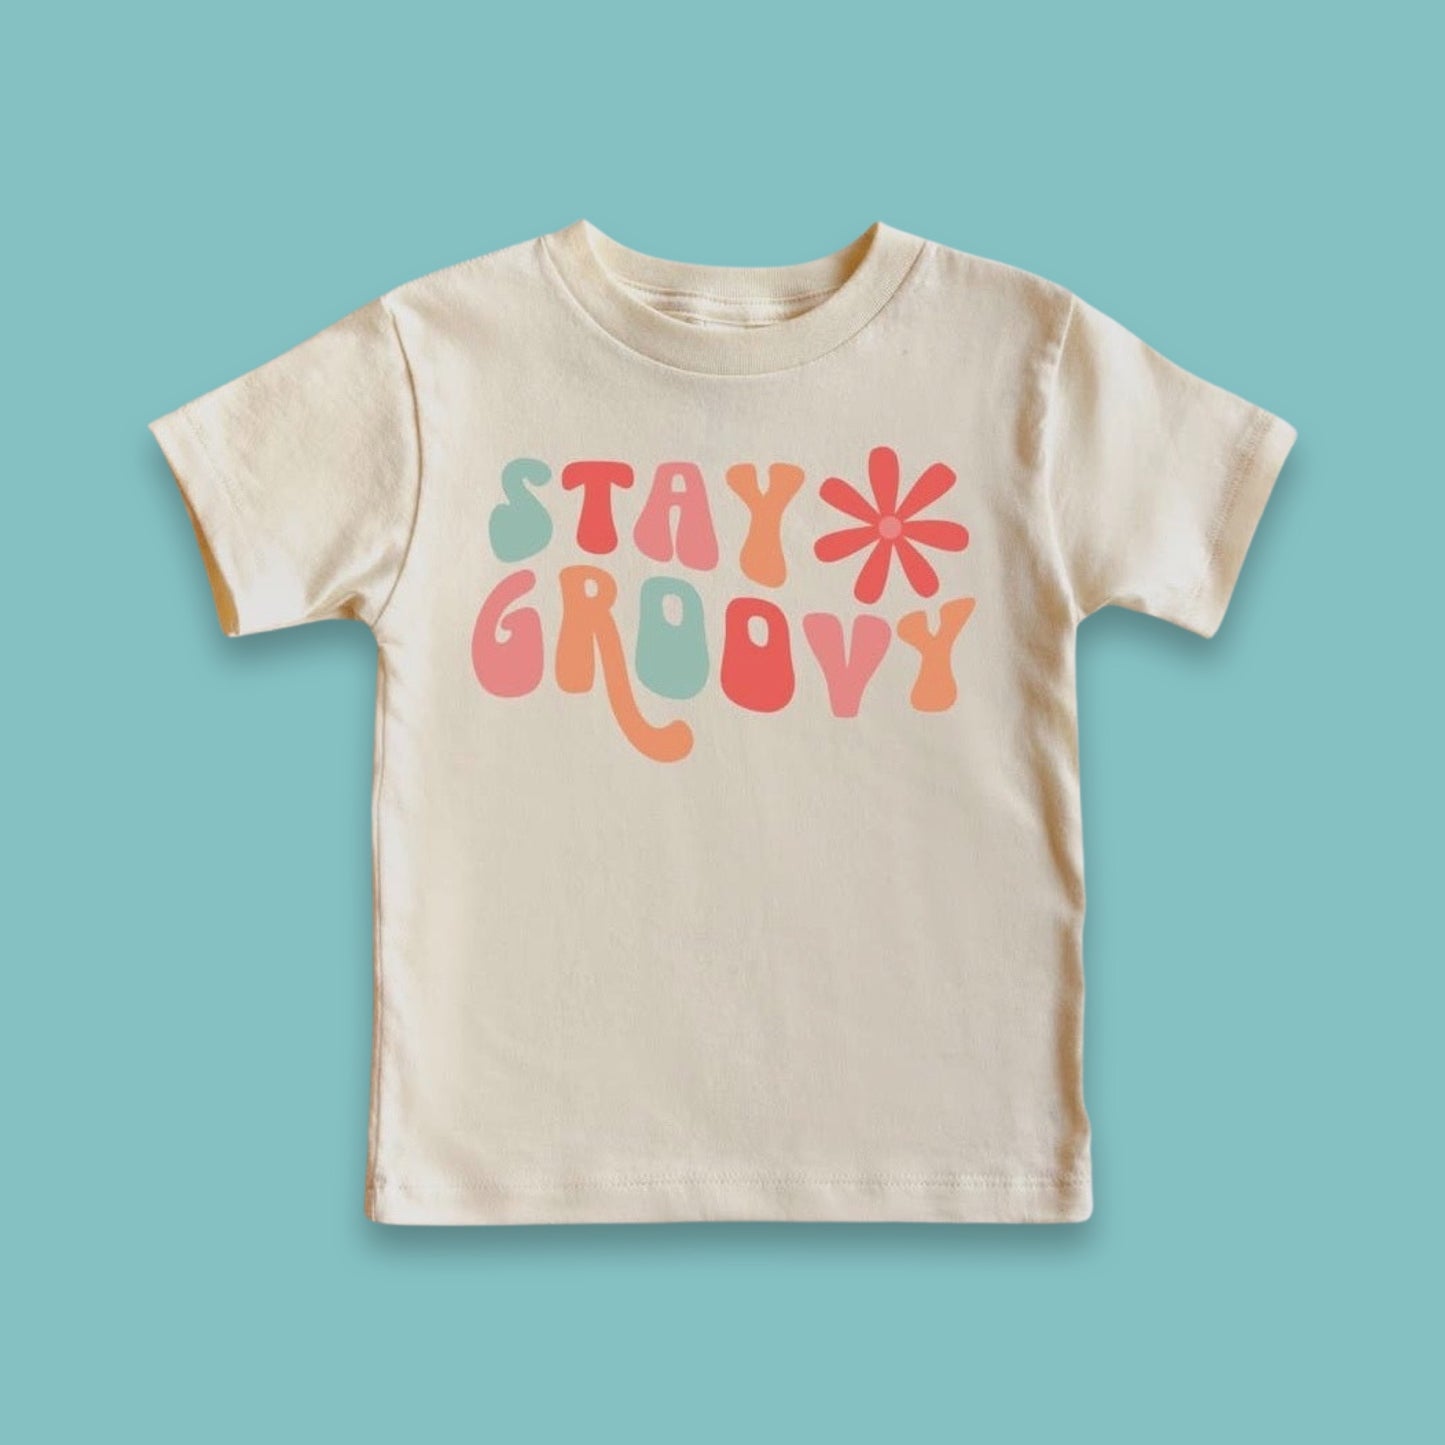 Stay Groovy Kids Tee Shirt